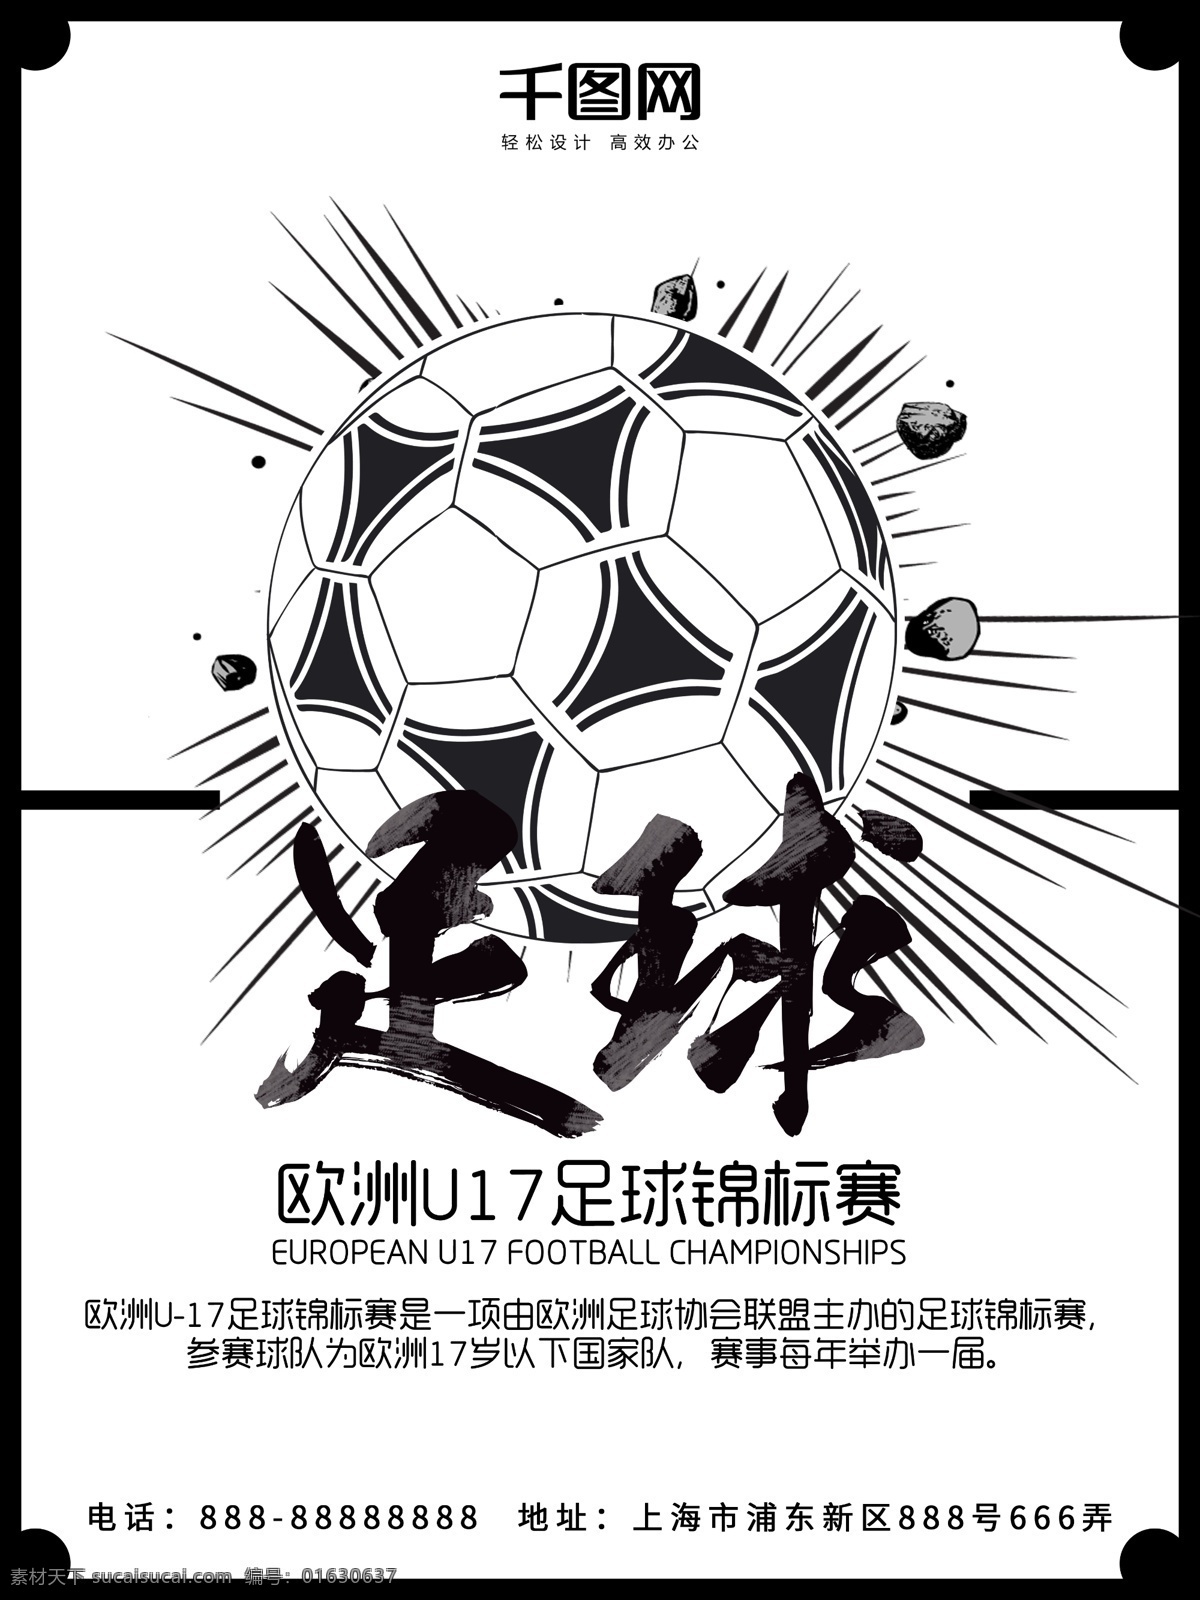 足球 白色 简约 欧洲 u17 锦标赛 体育 海报 体育海报 足球海报 足球比赛 球迷 足球锦标赛